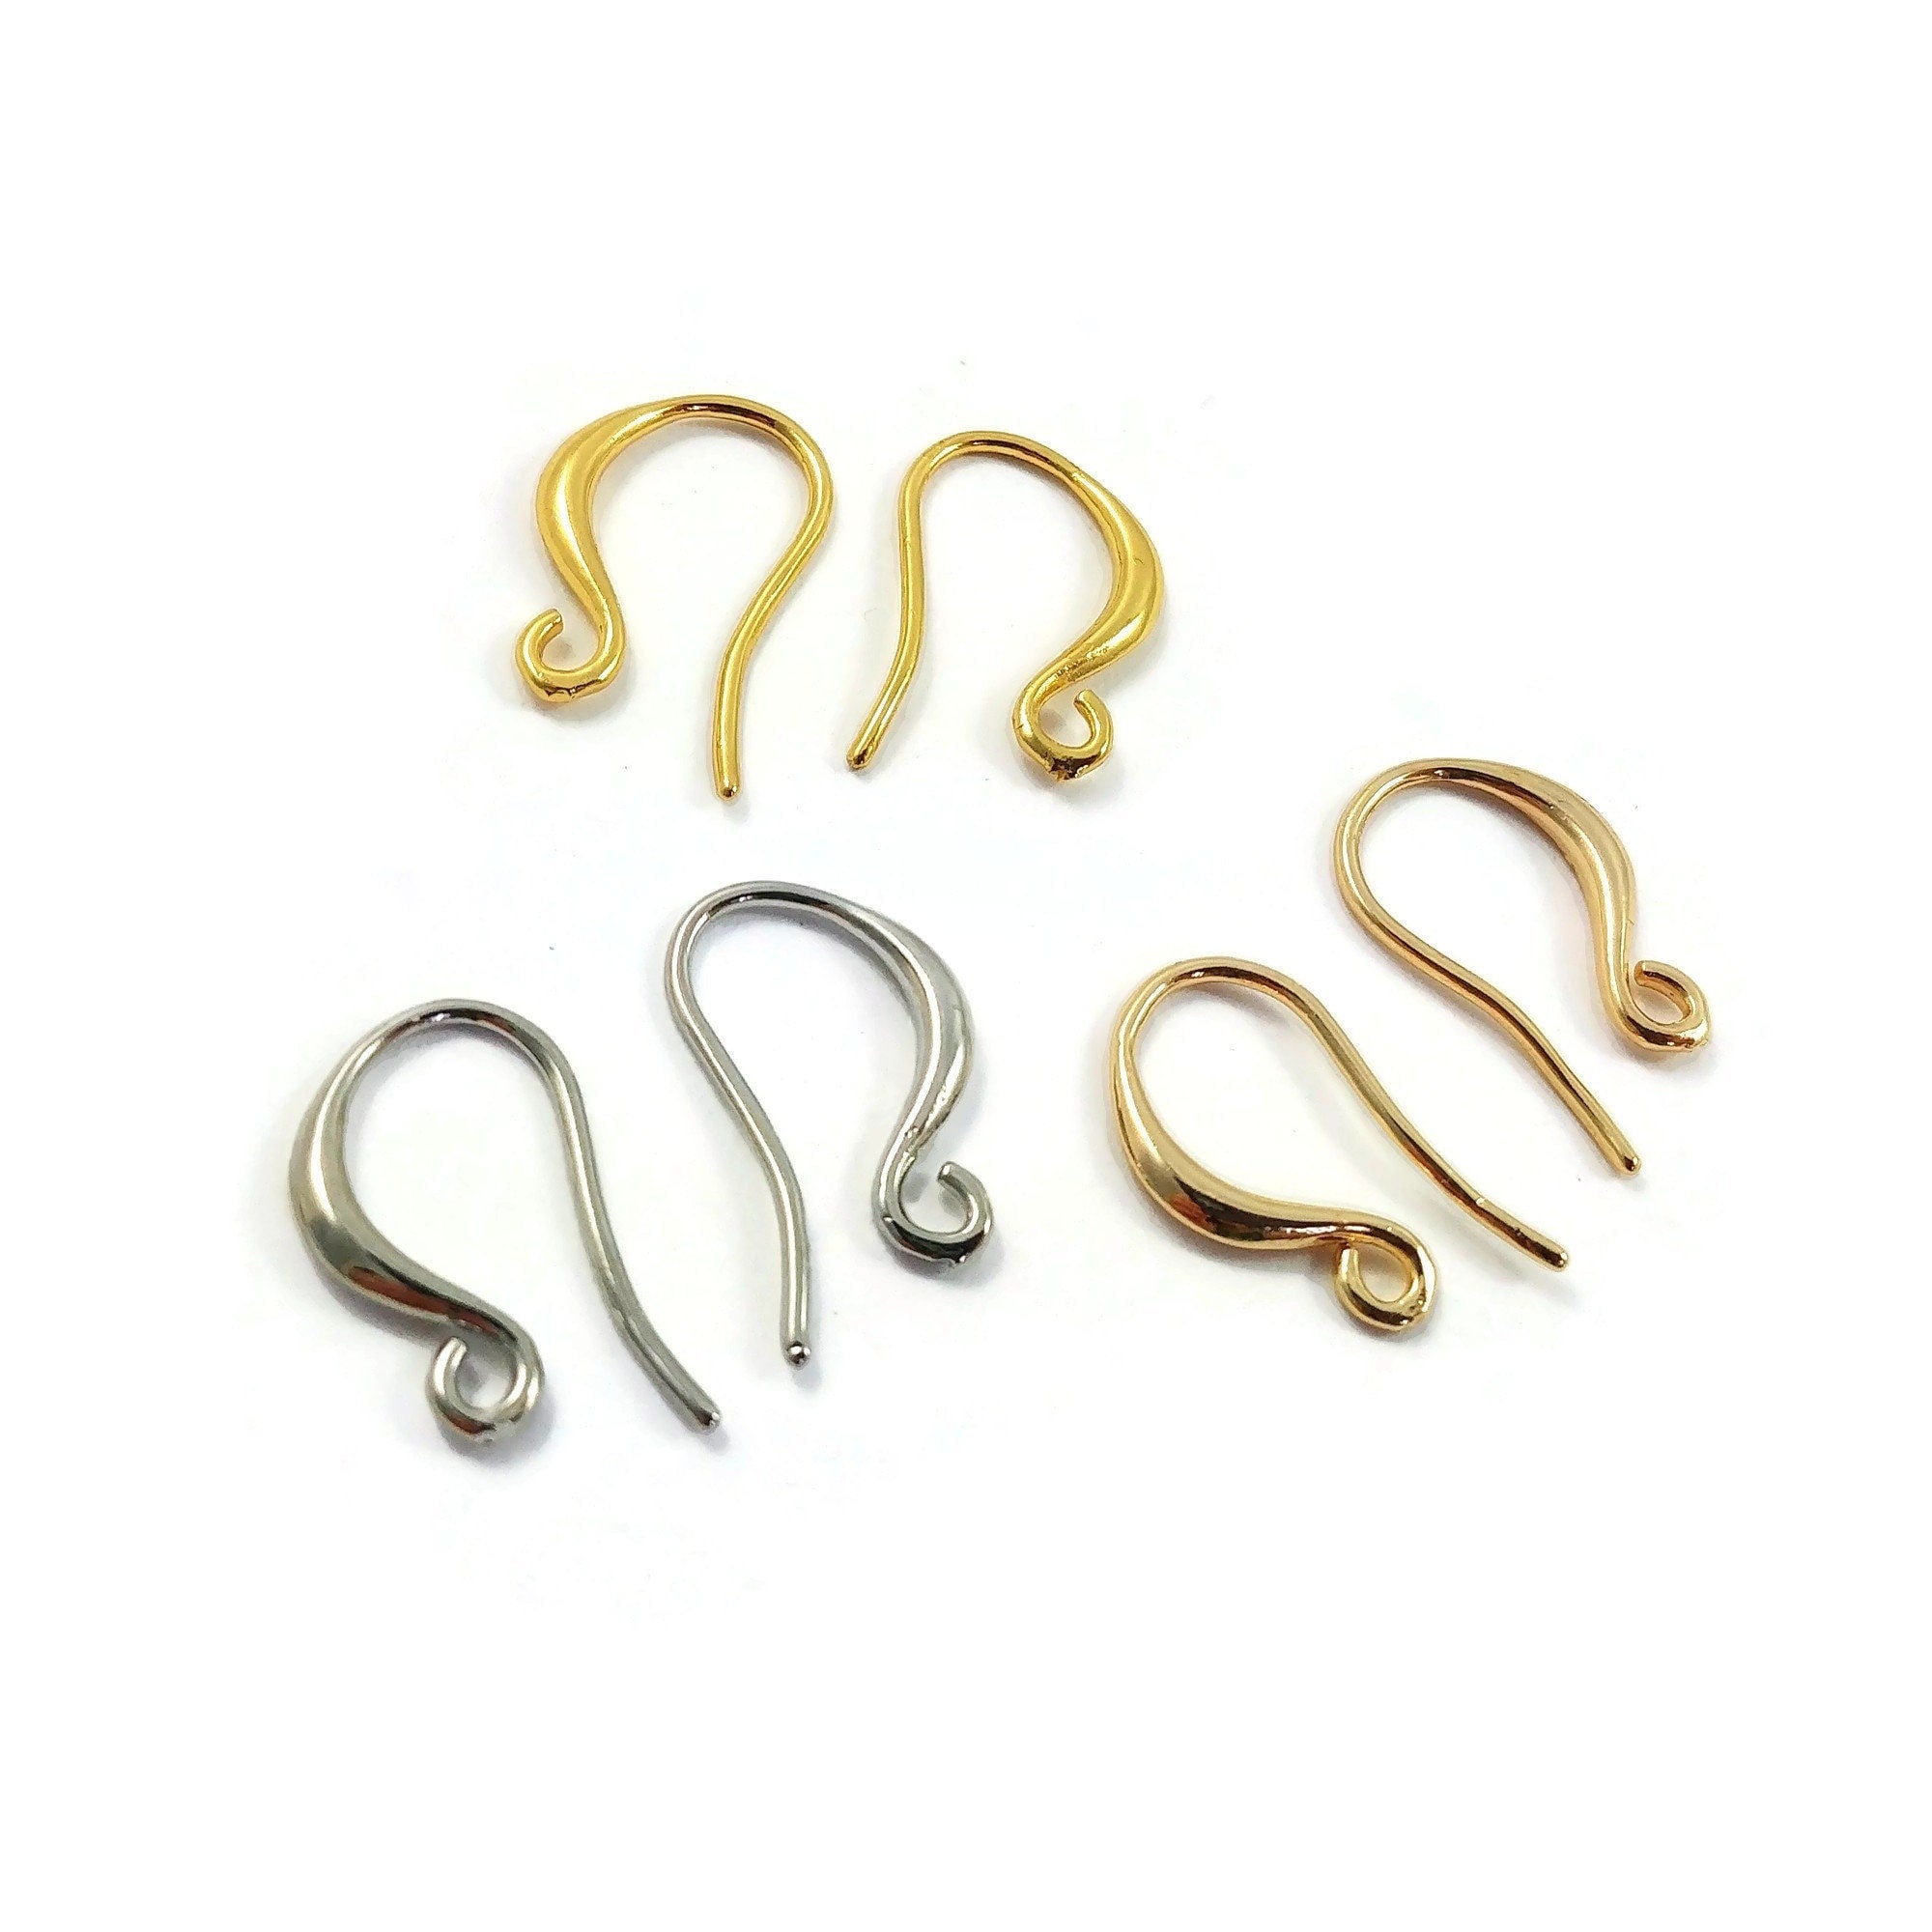 Nickel free earring hooks, Gold, Silver brass ear wire, Jewelry making